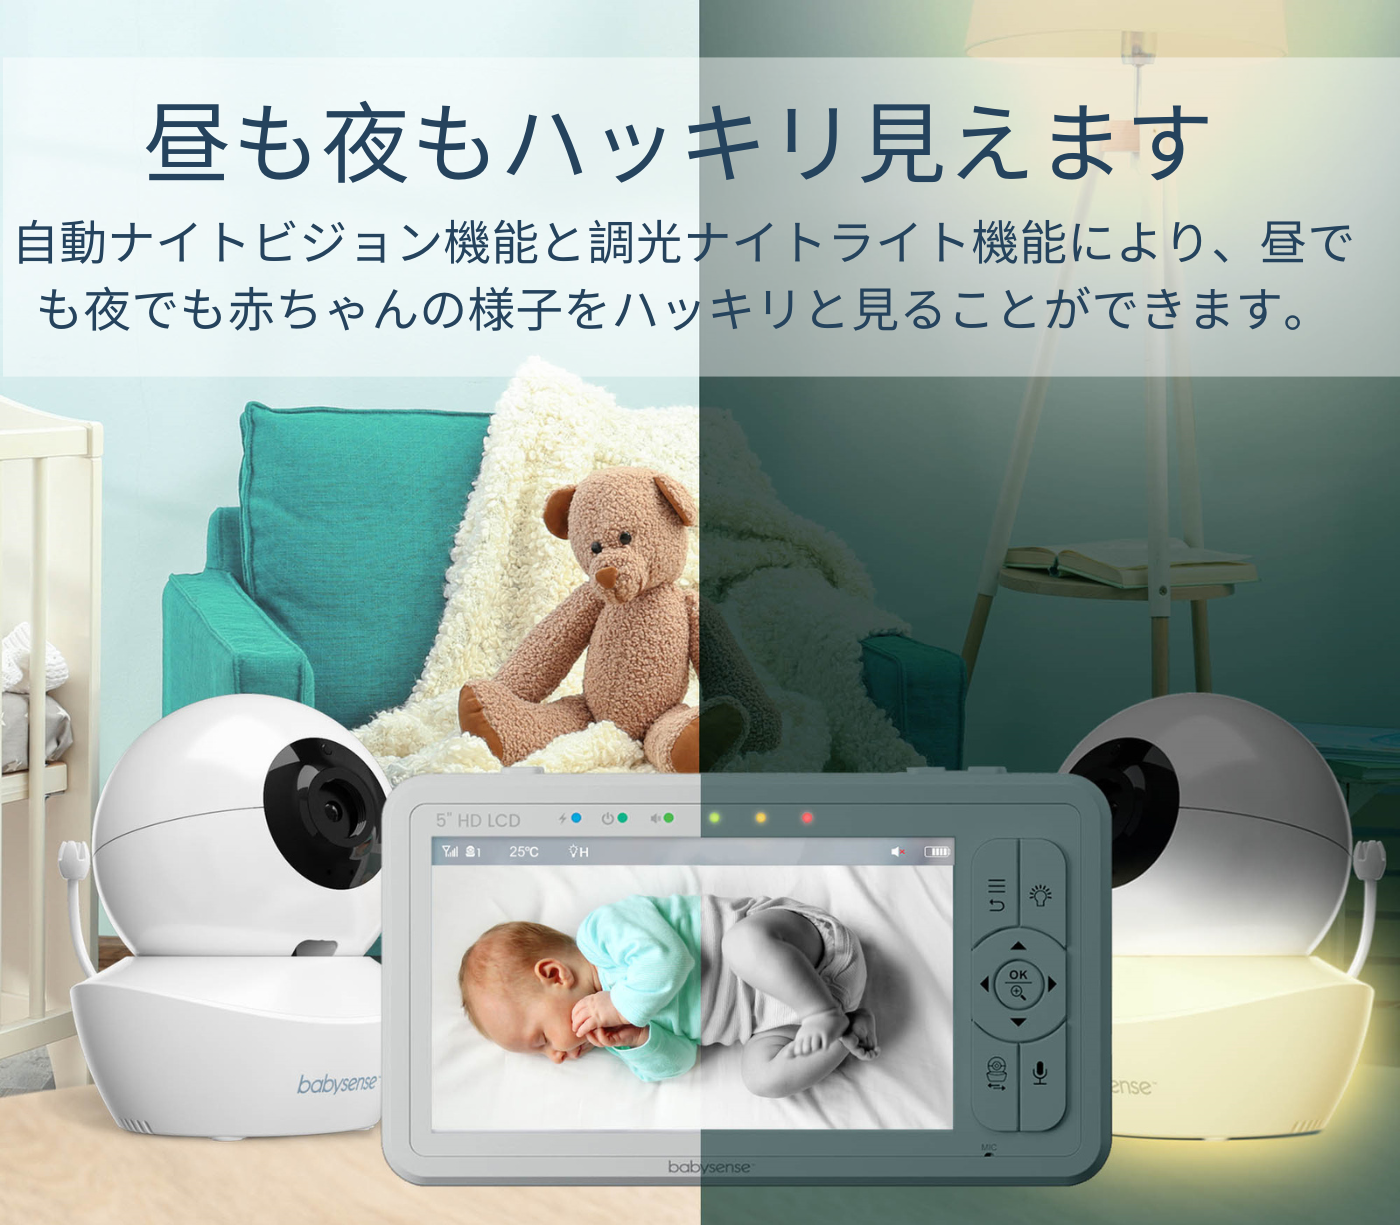 防犯カメラ【新品未開封！】babysense HD S2 ベビーモニター 見守りカメラ2台